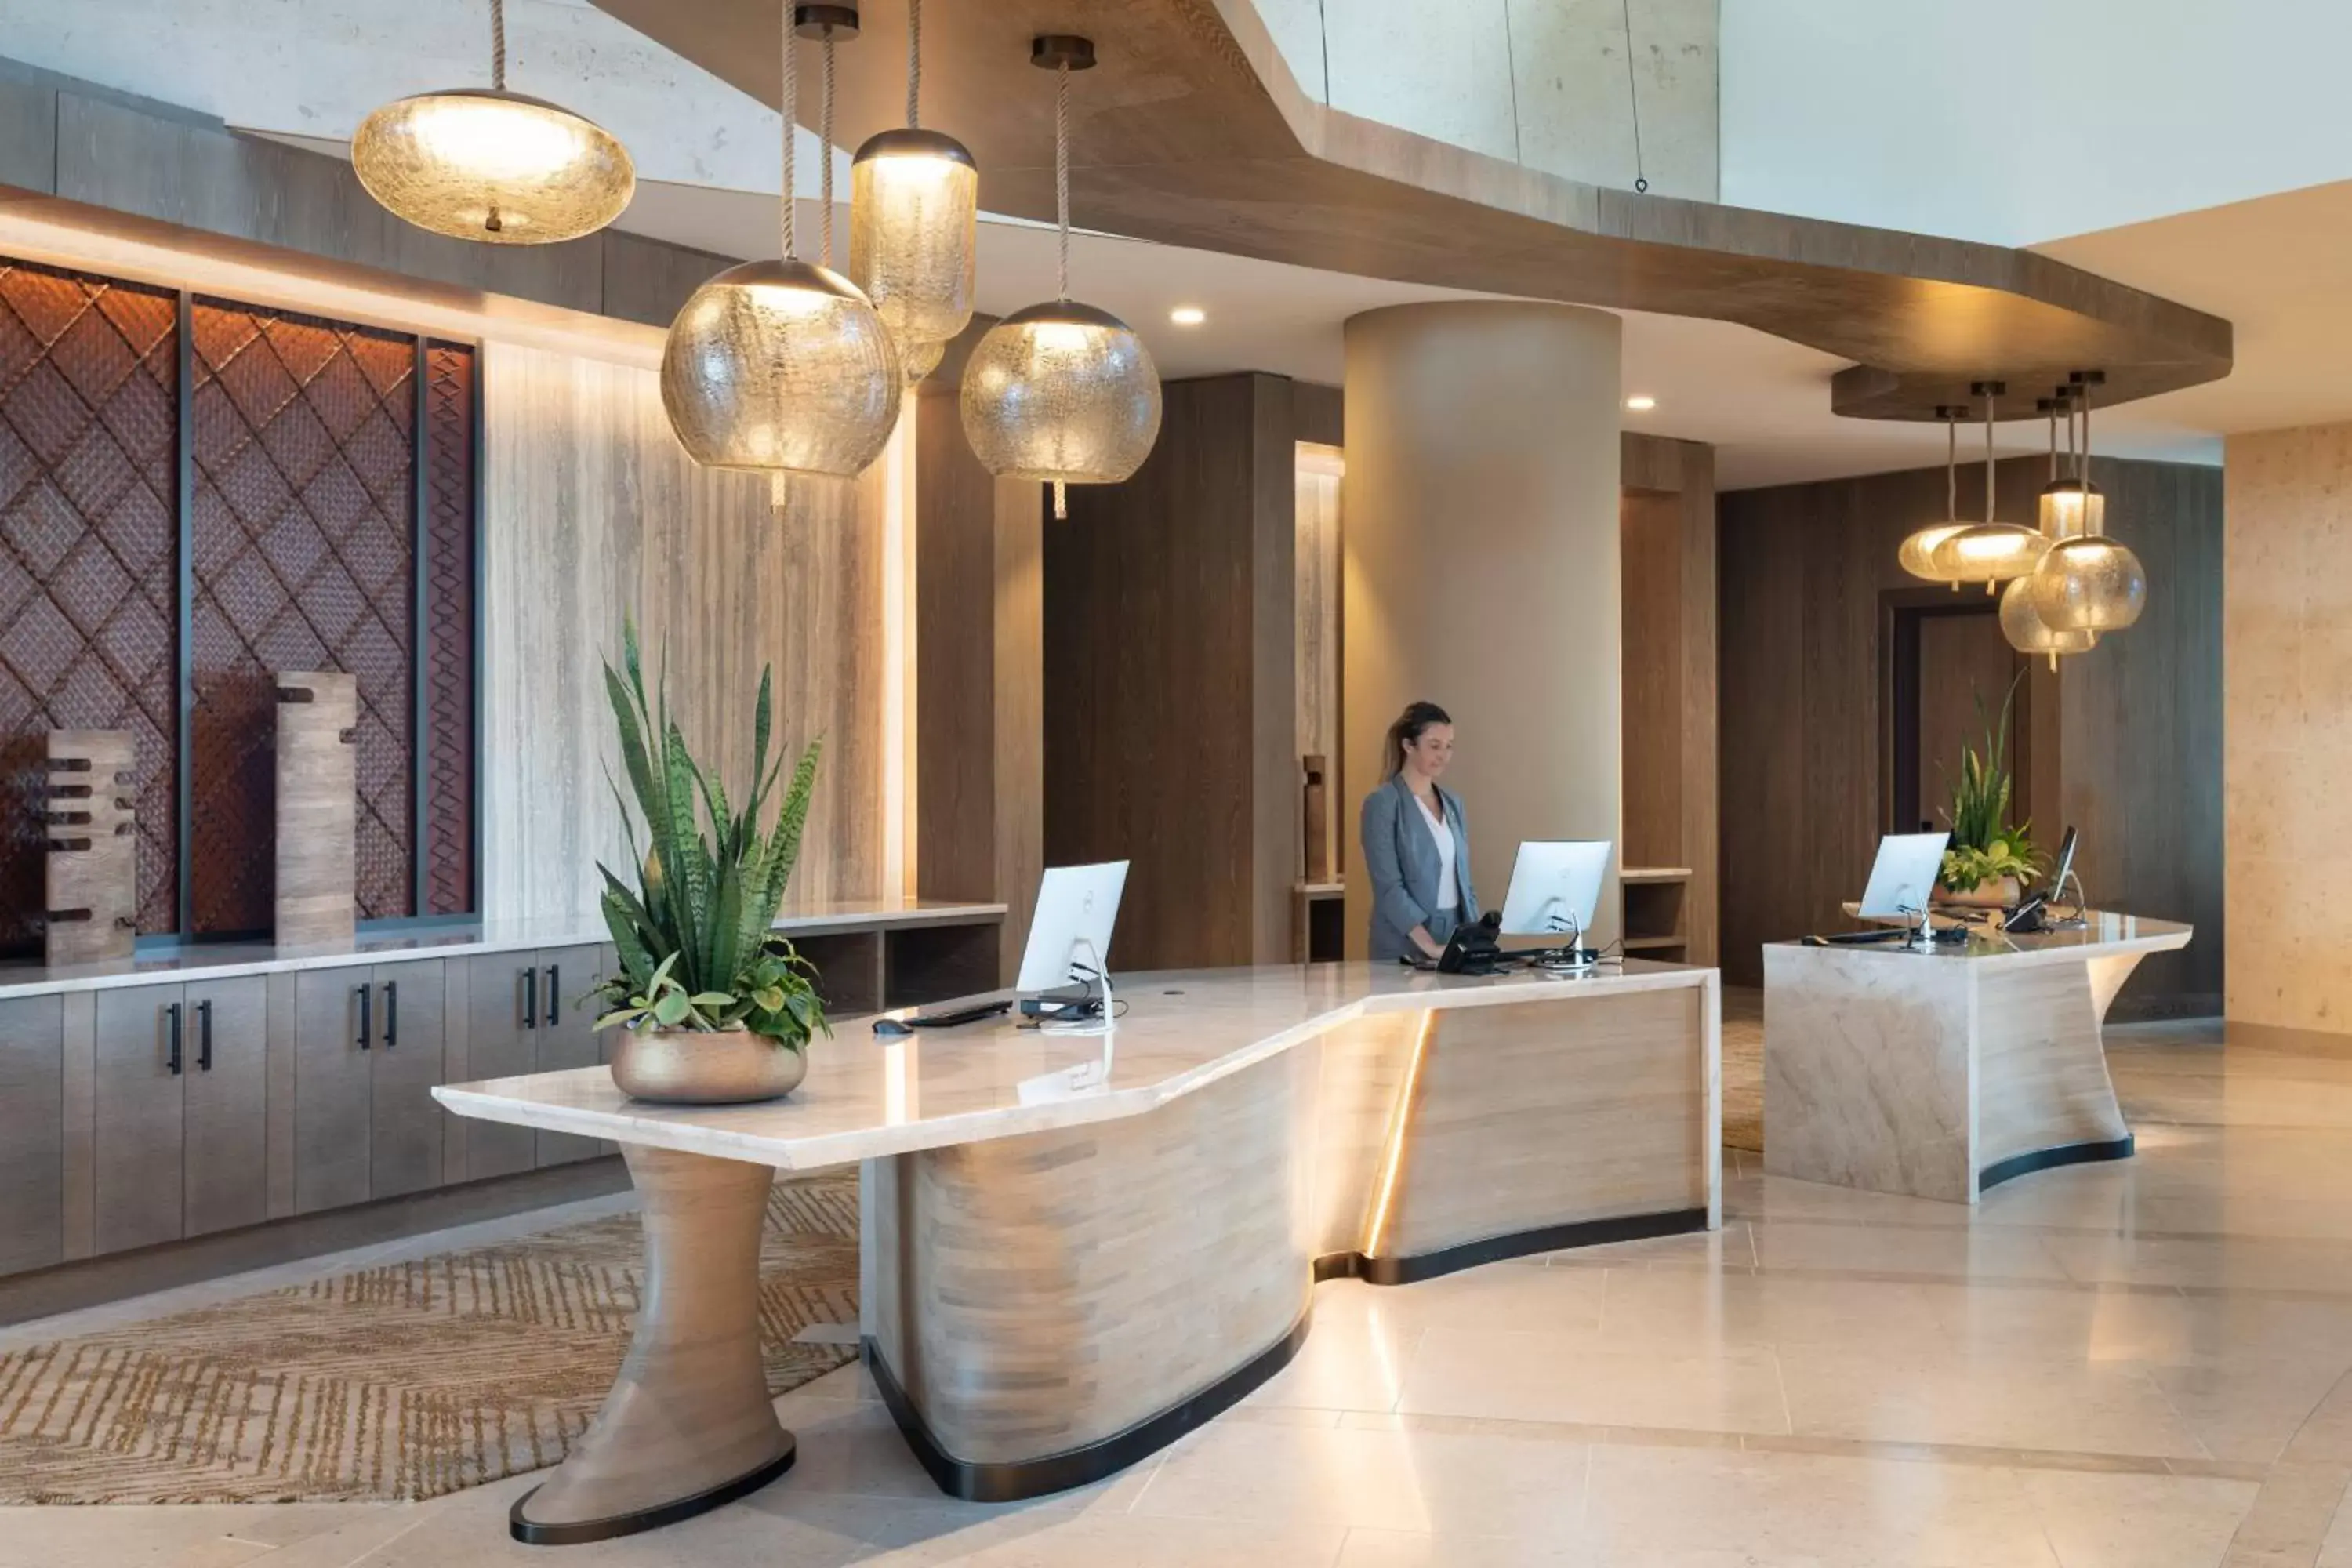 Lobby or reception in JW Marriott Orlando Bonnet Creek Resort & Spa